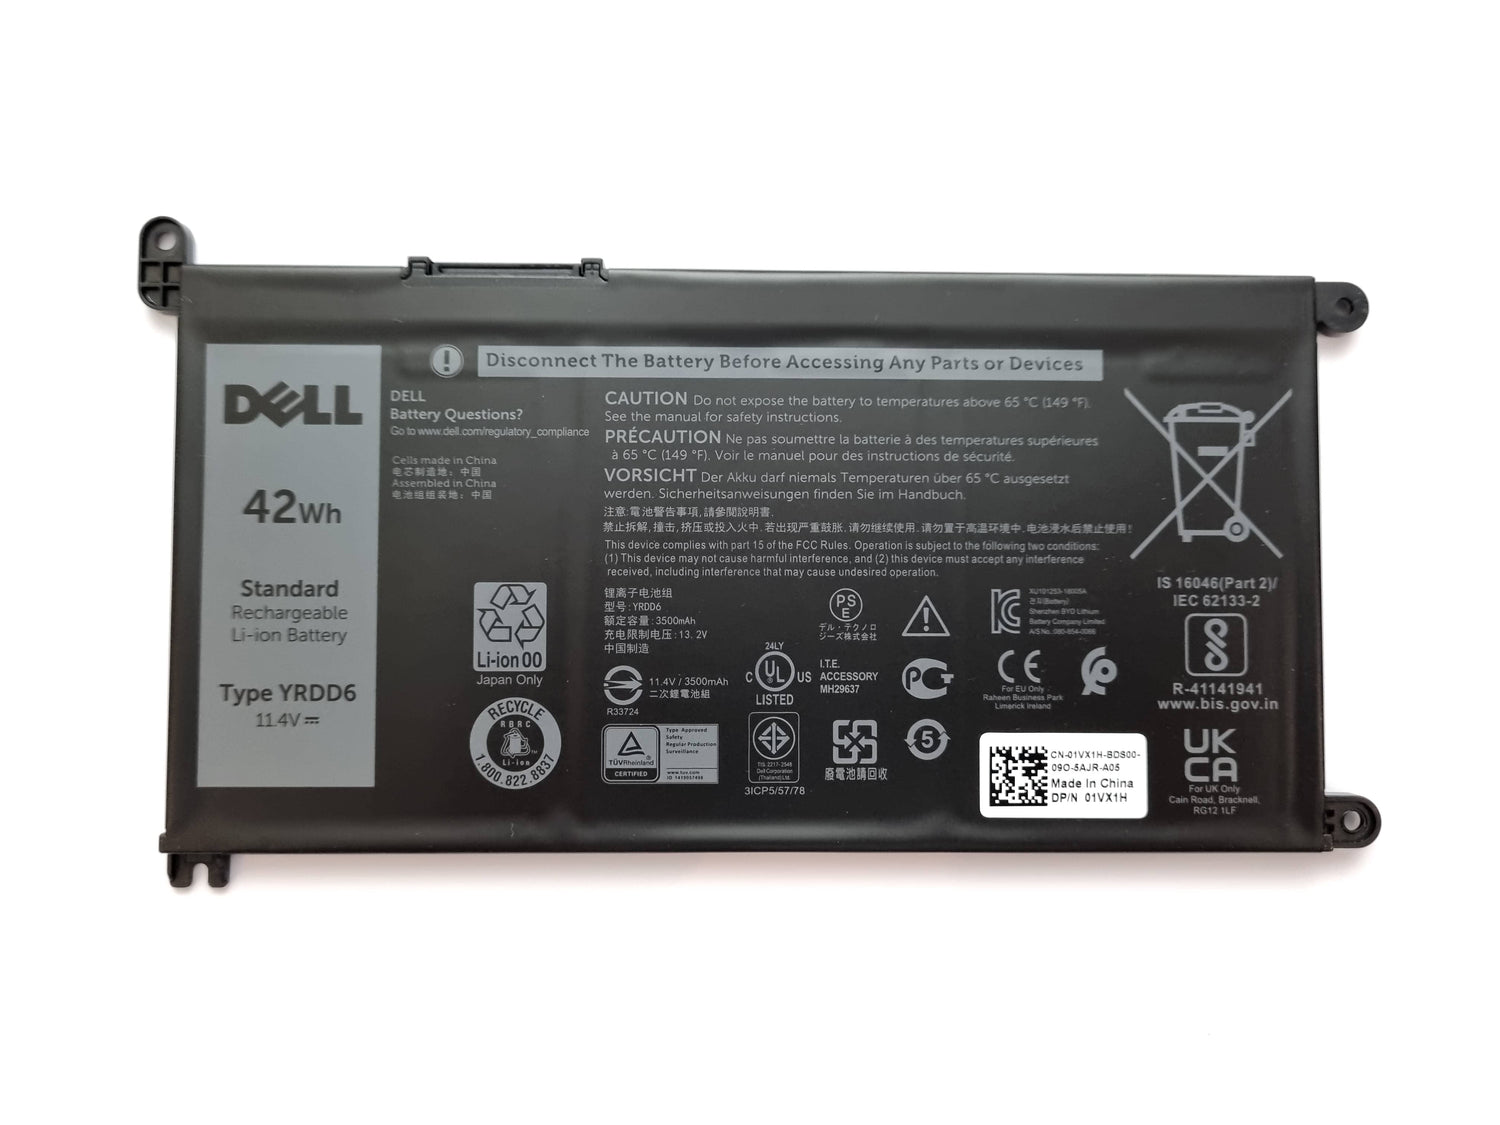 Dell Vostro Laptop Batteries  | Black Cat PC